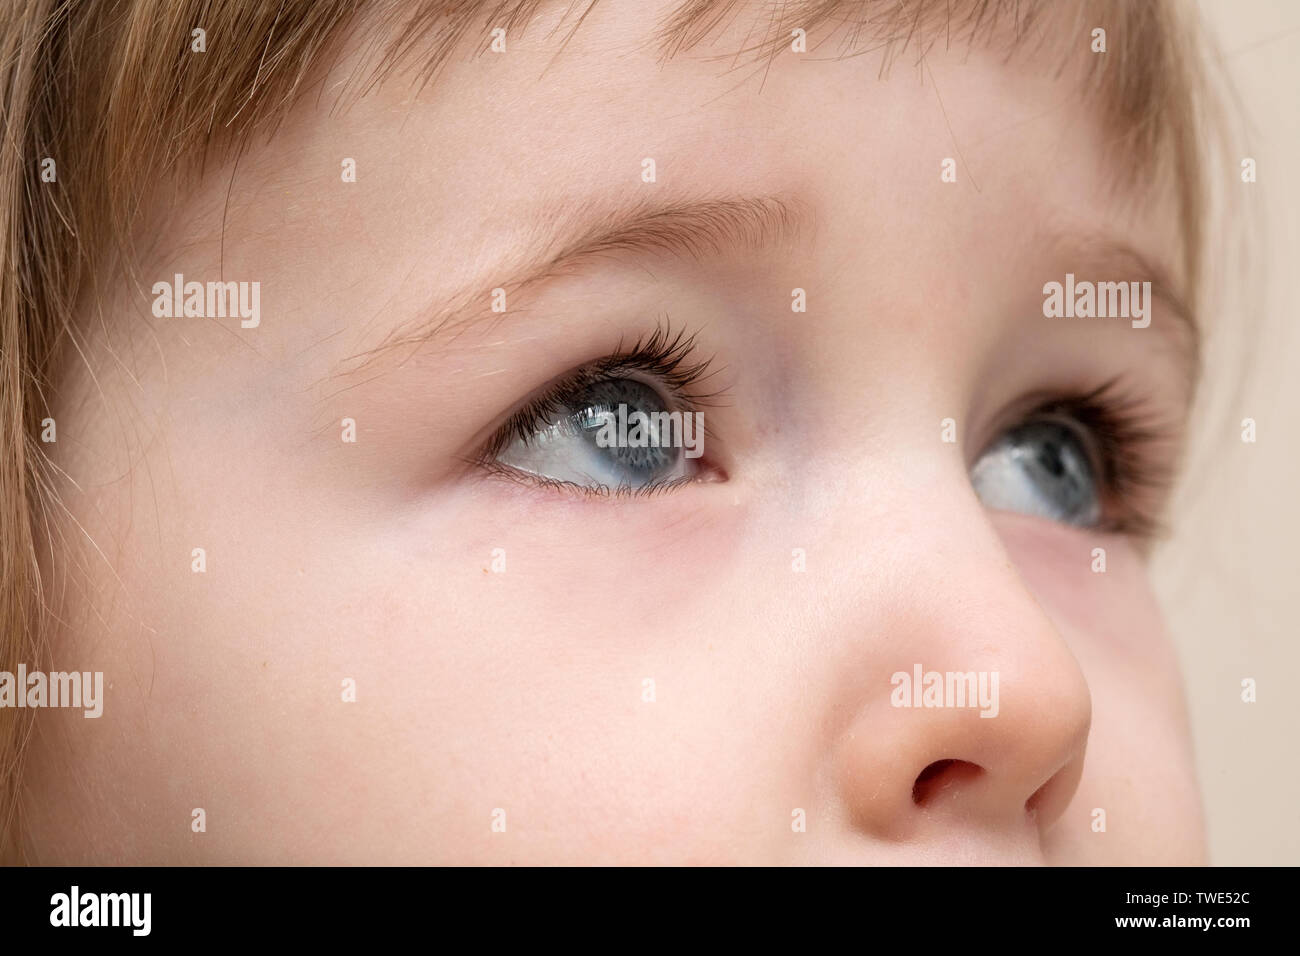 Schwere graue Augen der weißen drei Jahre alten Kind Gesicht Detailansicht Stockfoto